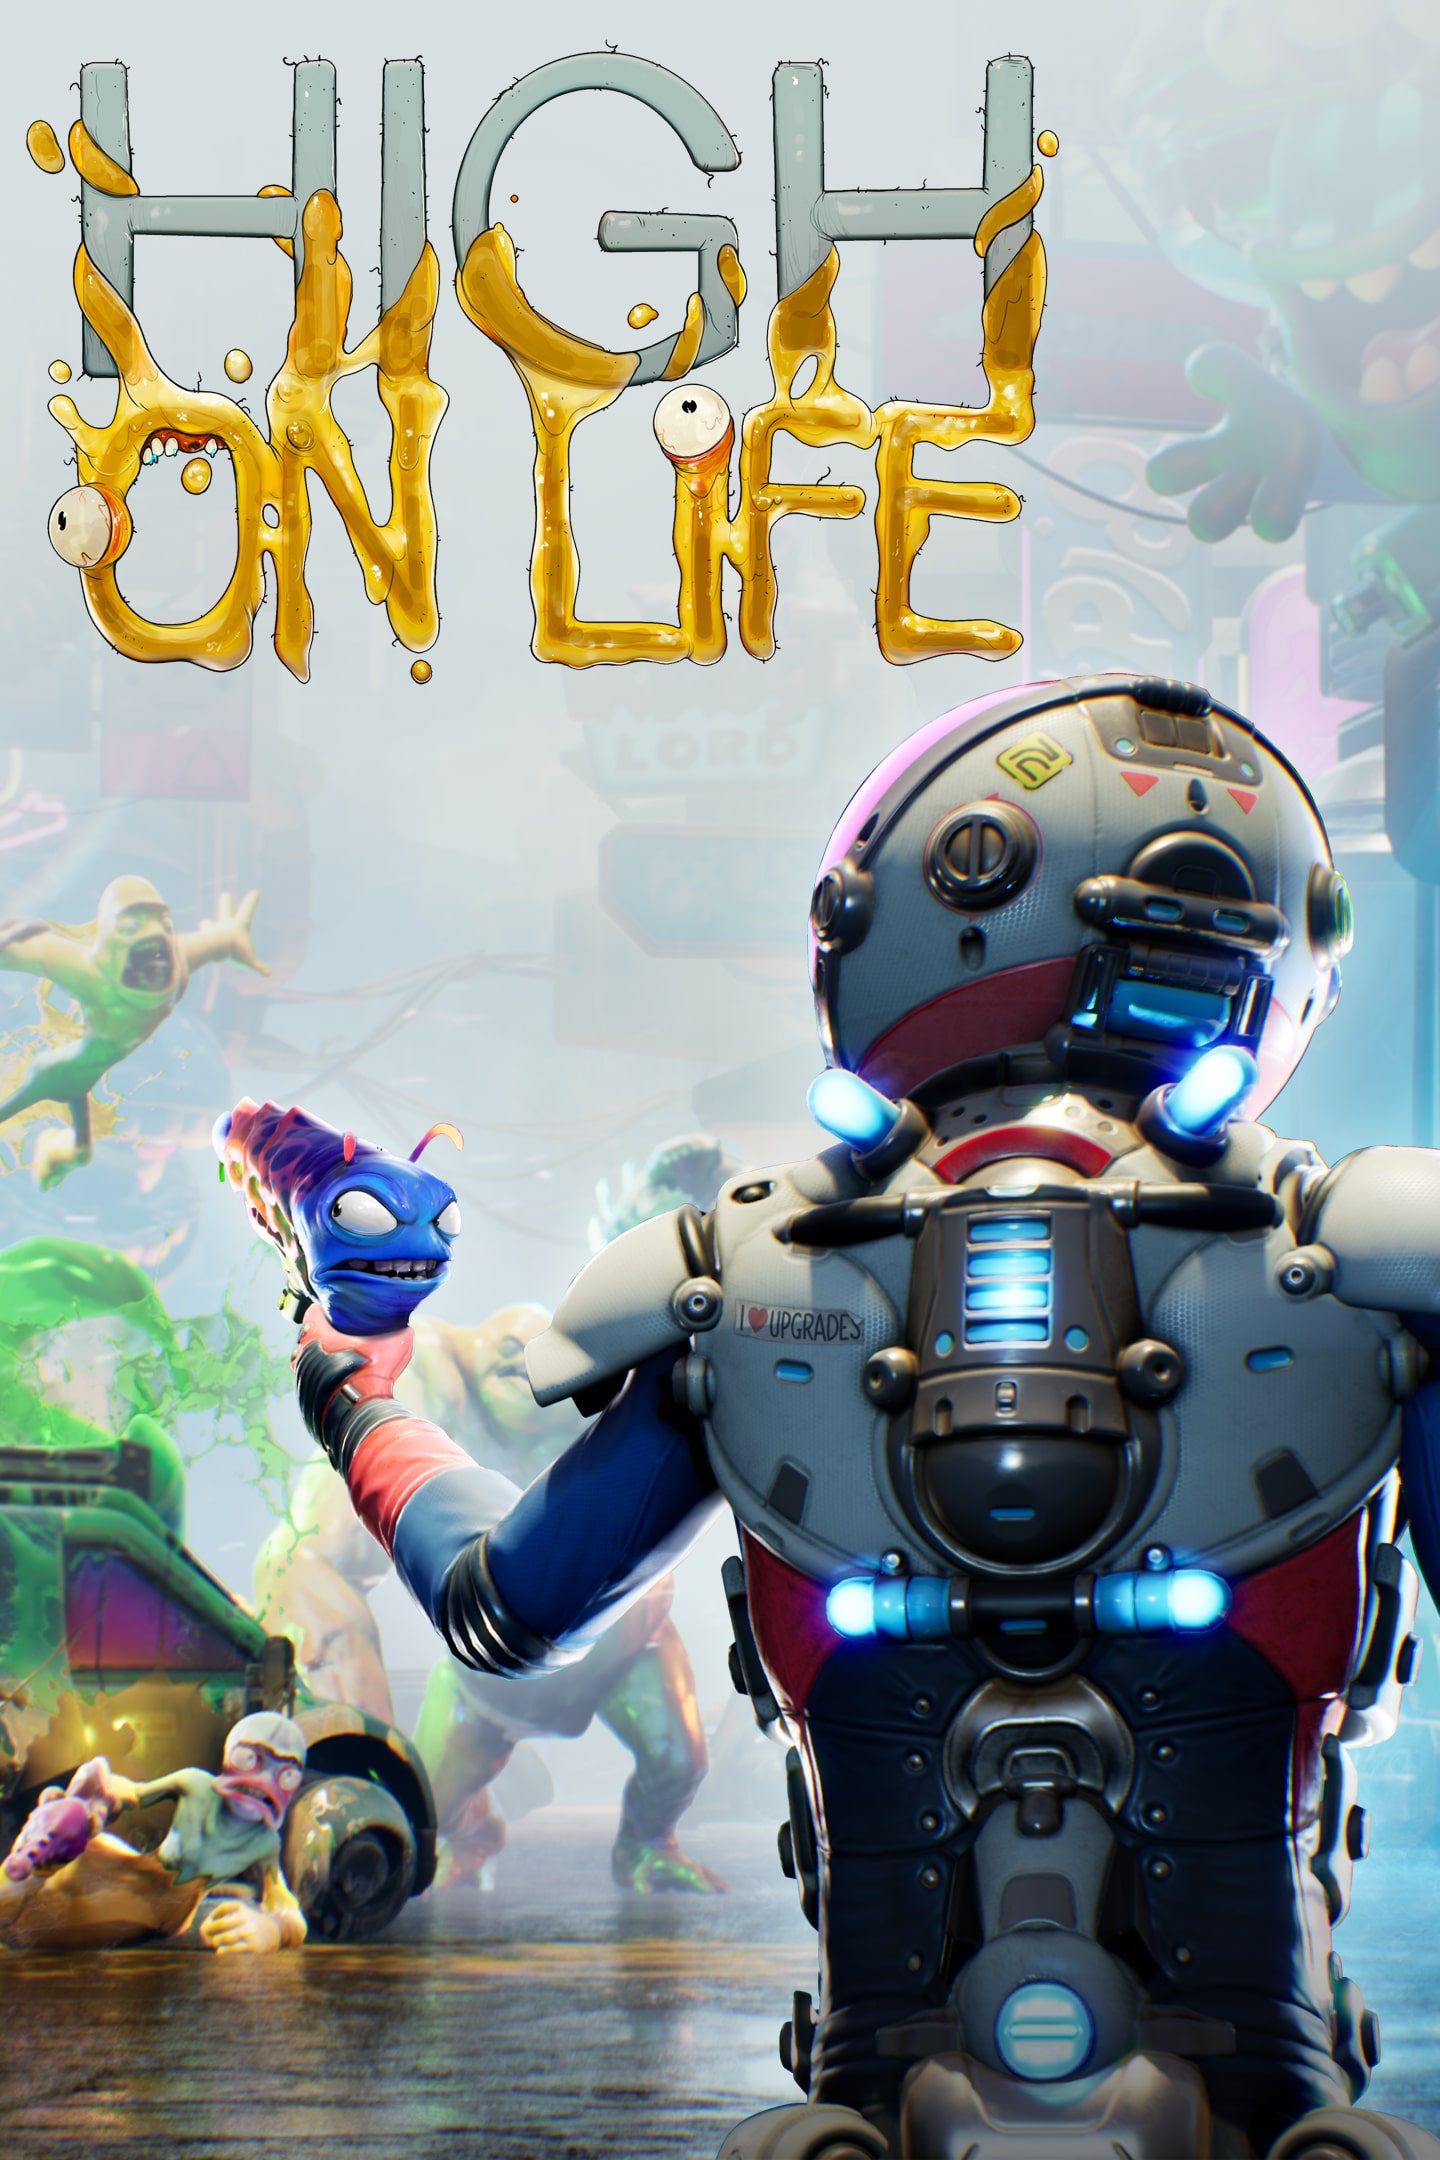 High on Life já está disponível para PS4 e PS5